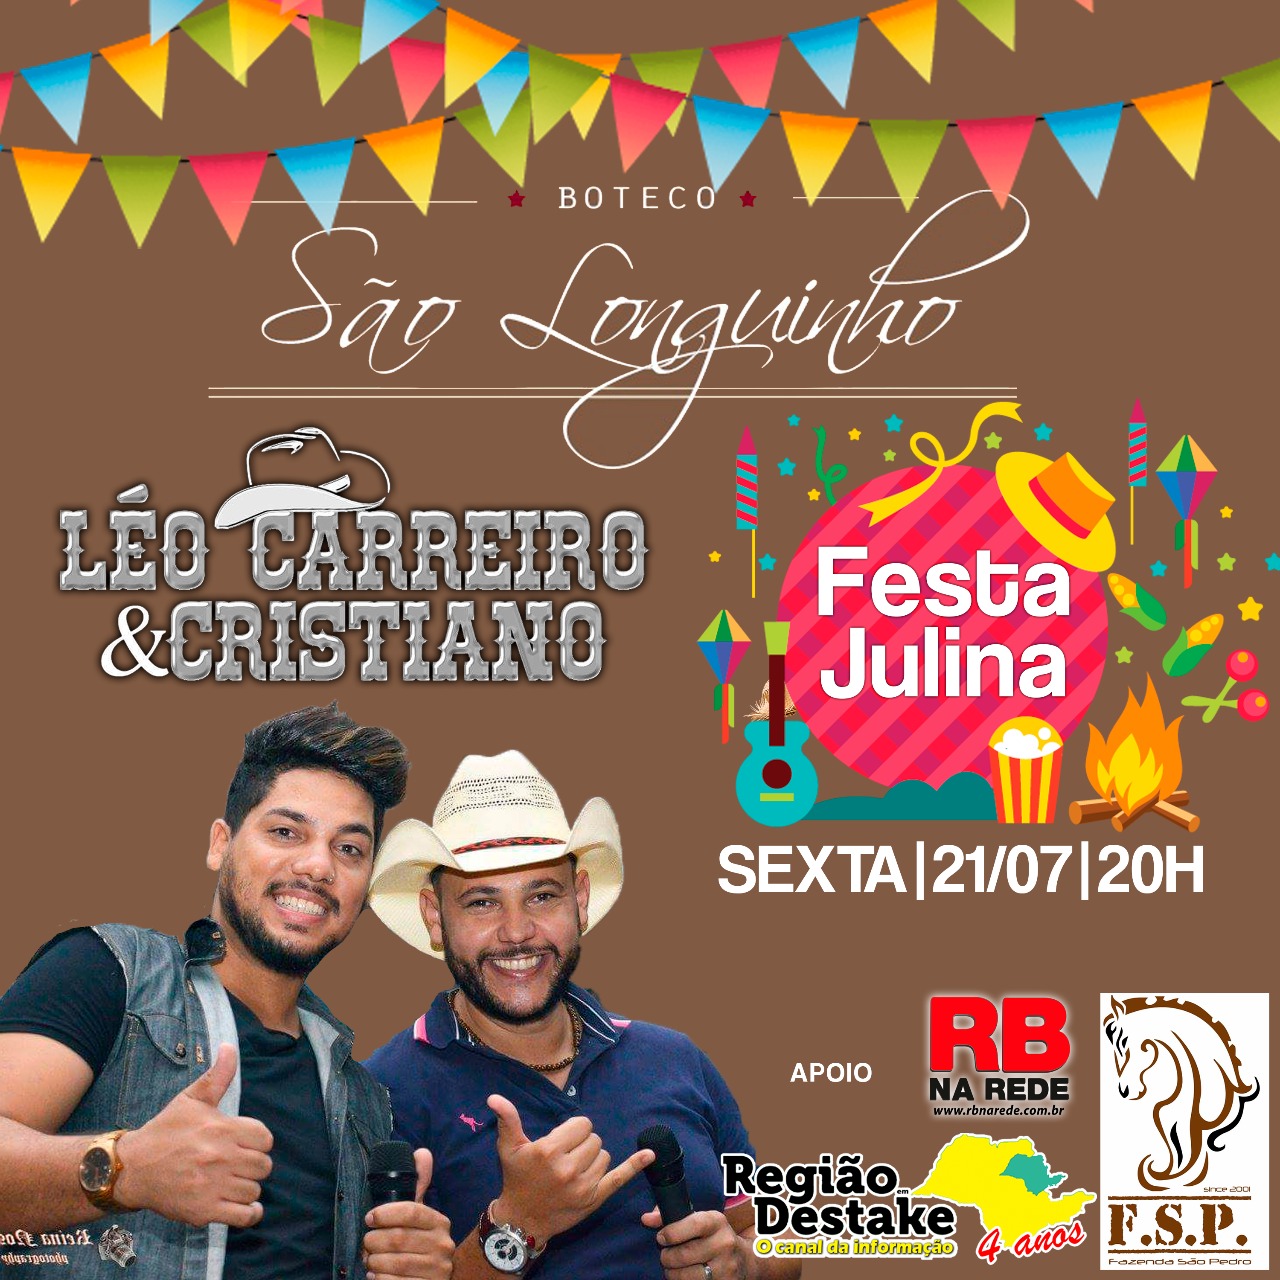 Boteco São Longuinho realiza Festa Julina em Ribeirão Bonito